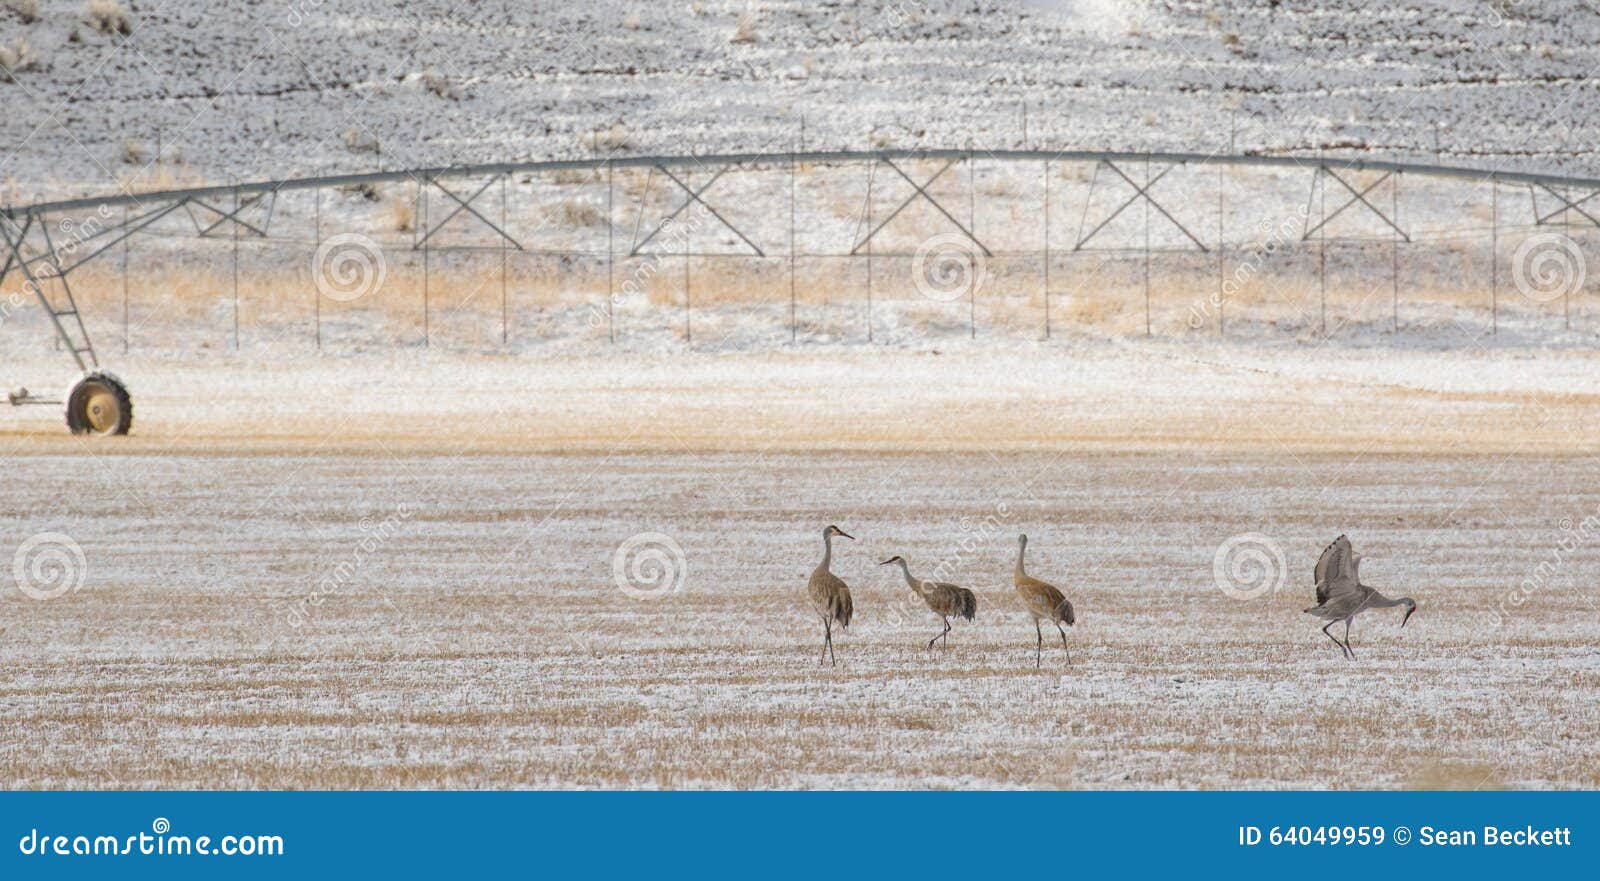 sandhill cranes birds forage agriculture pasture